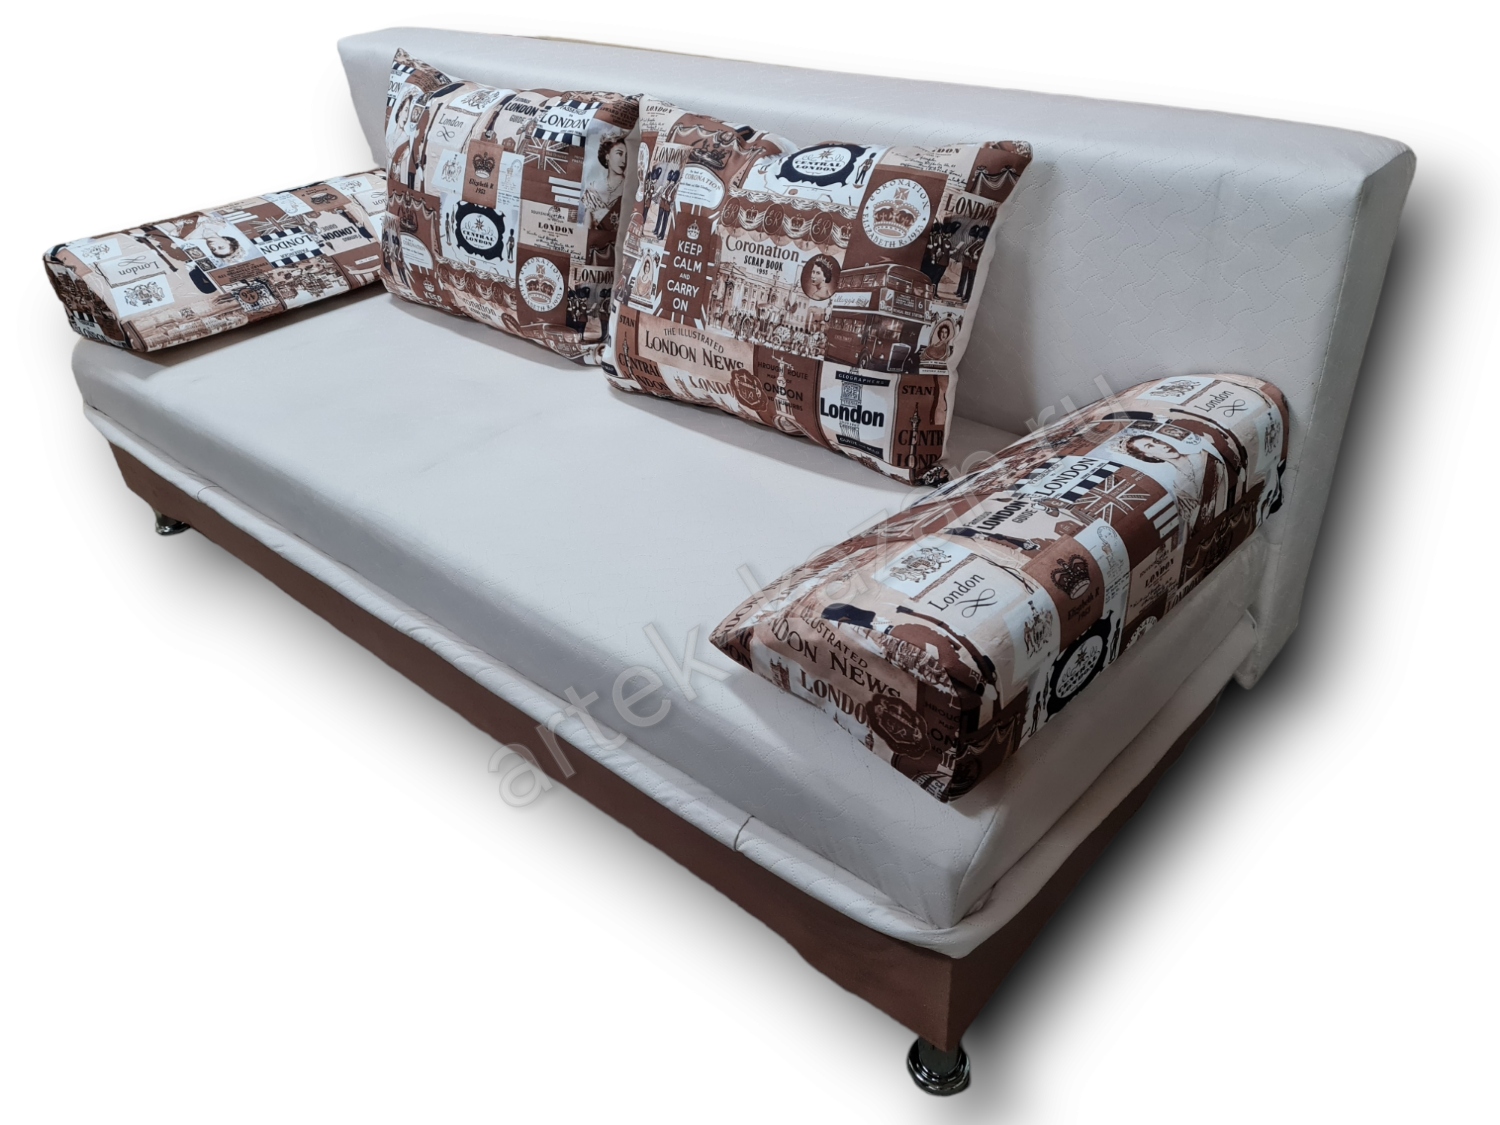 диван еврокнижка Эконом фото № 118. Купить недорогой диван по низкой цене от производителя можно у нас.